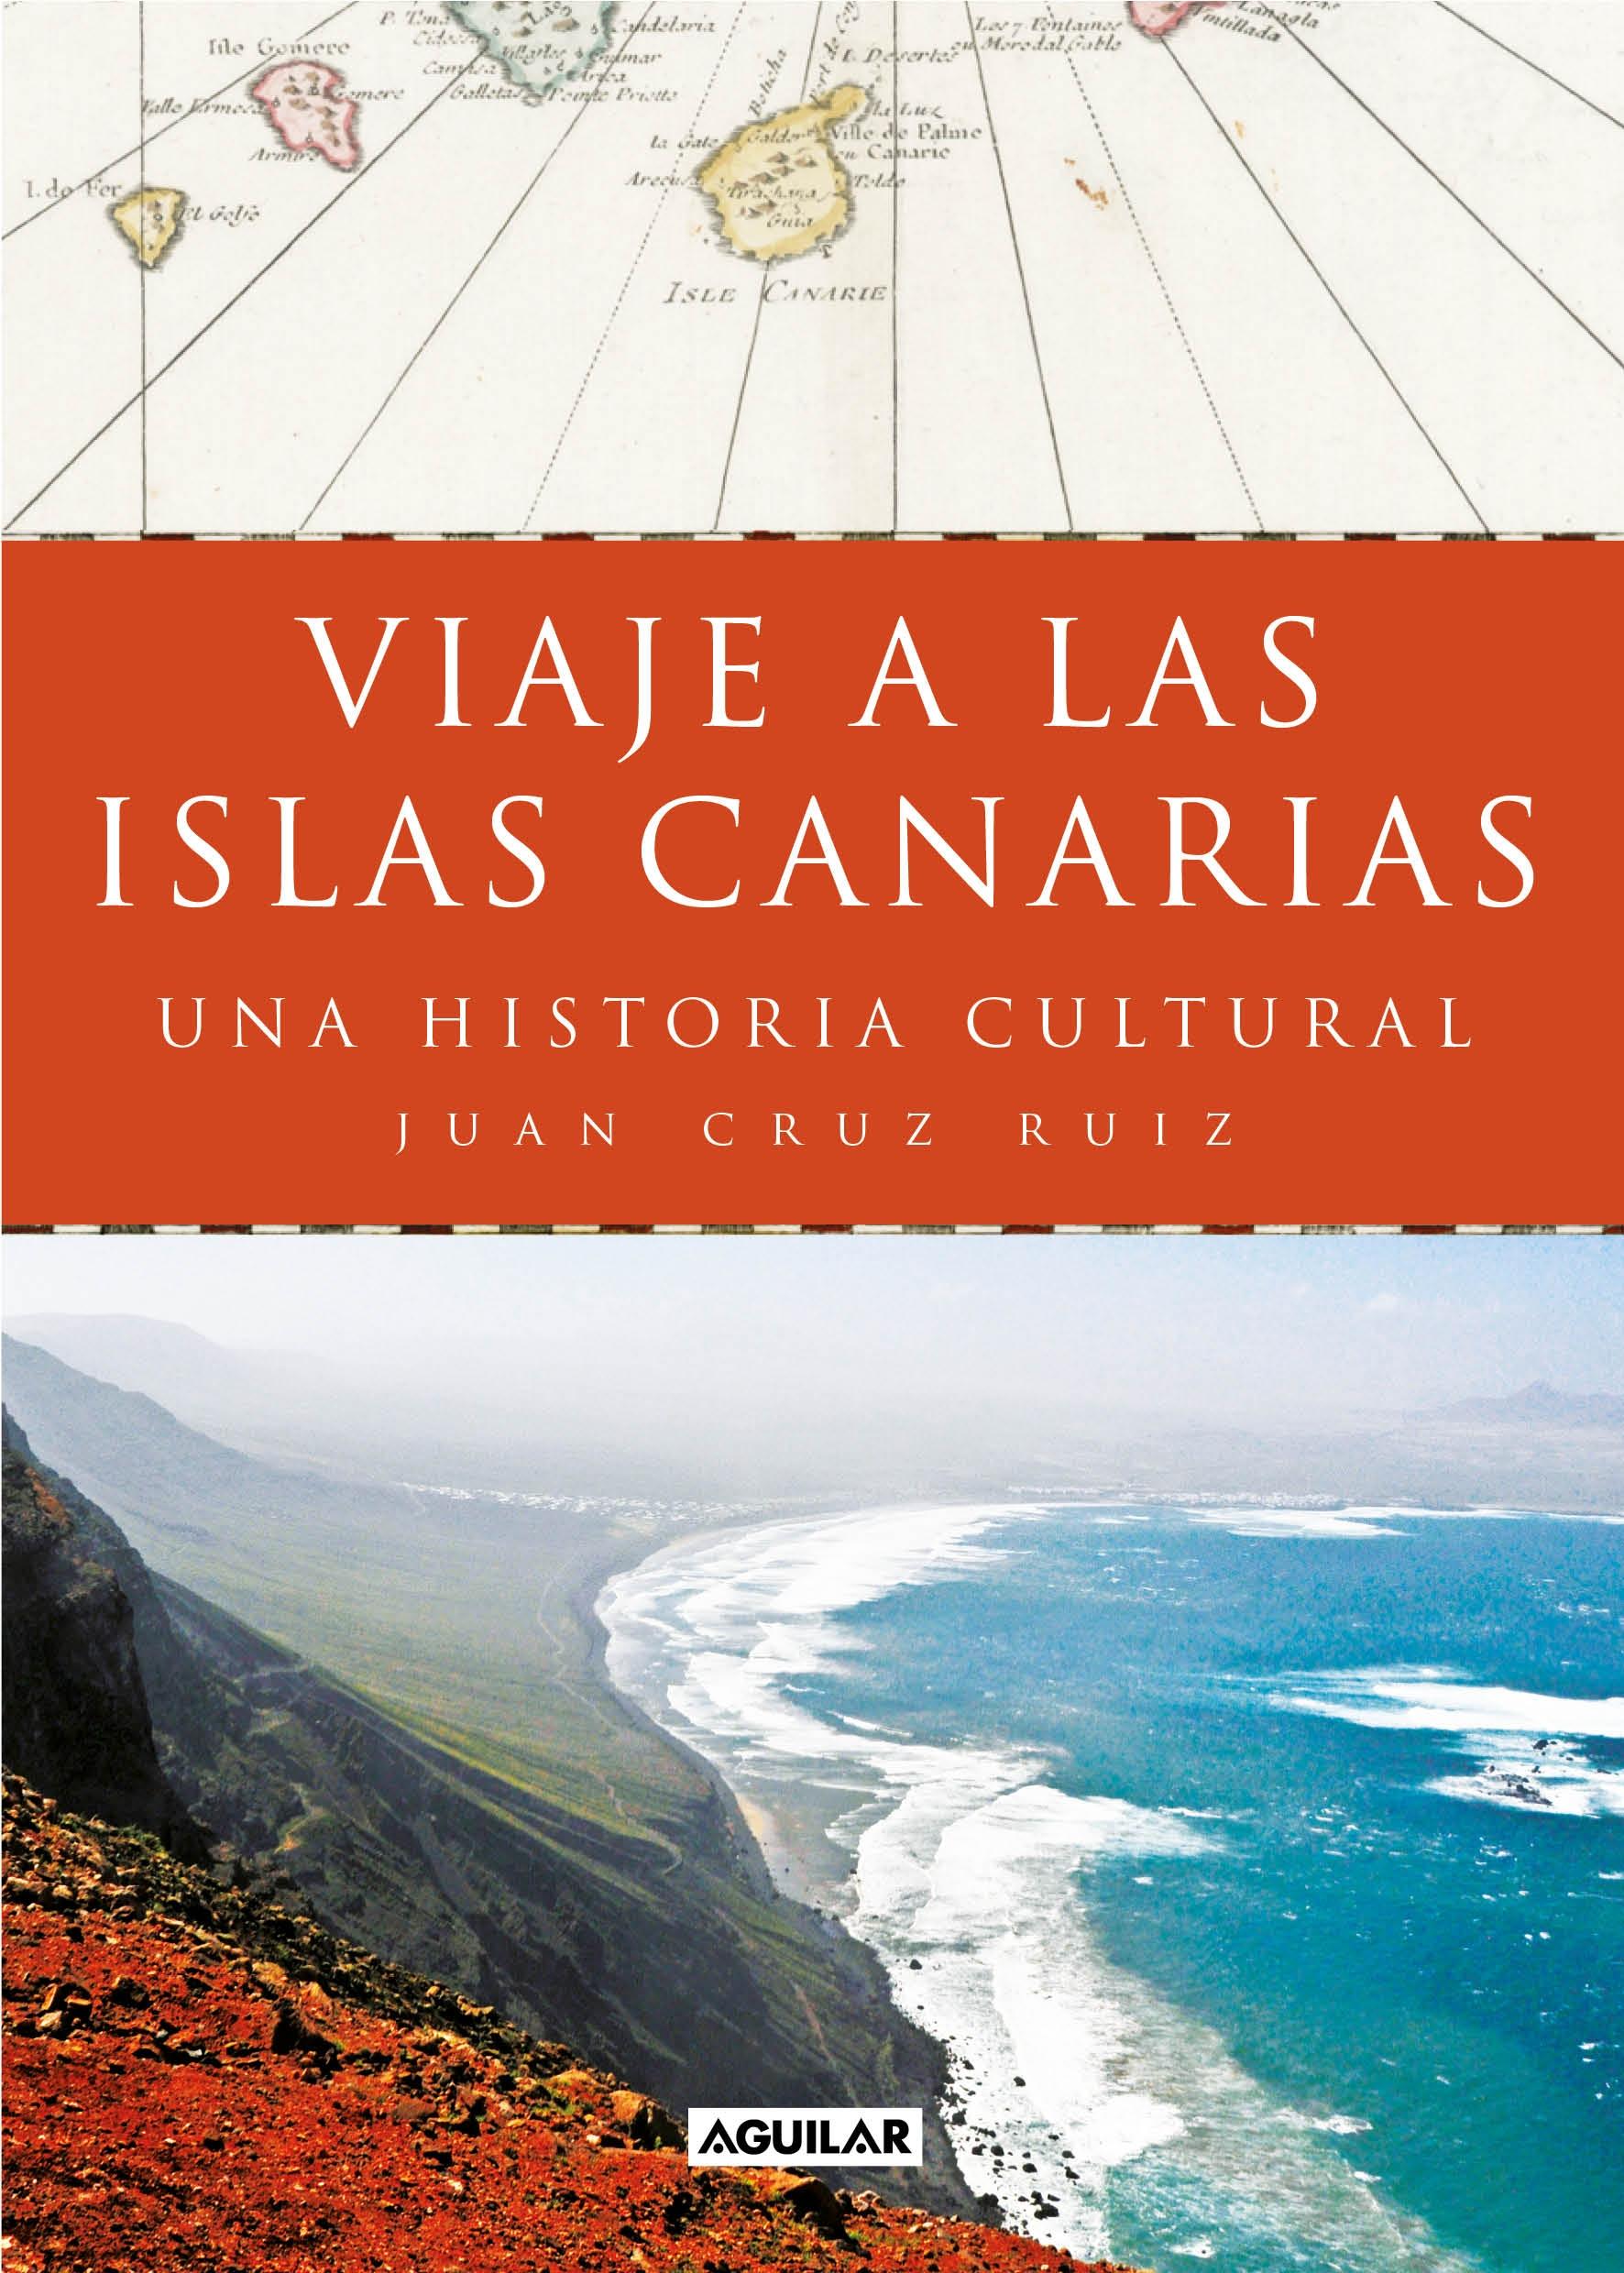 Viaje a las Islas Canarias "Una Historia Cultural"